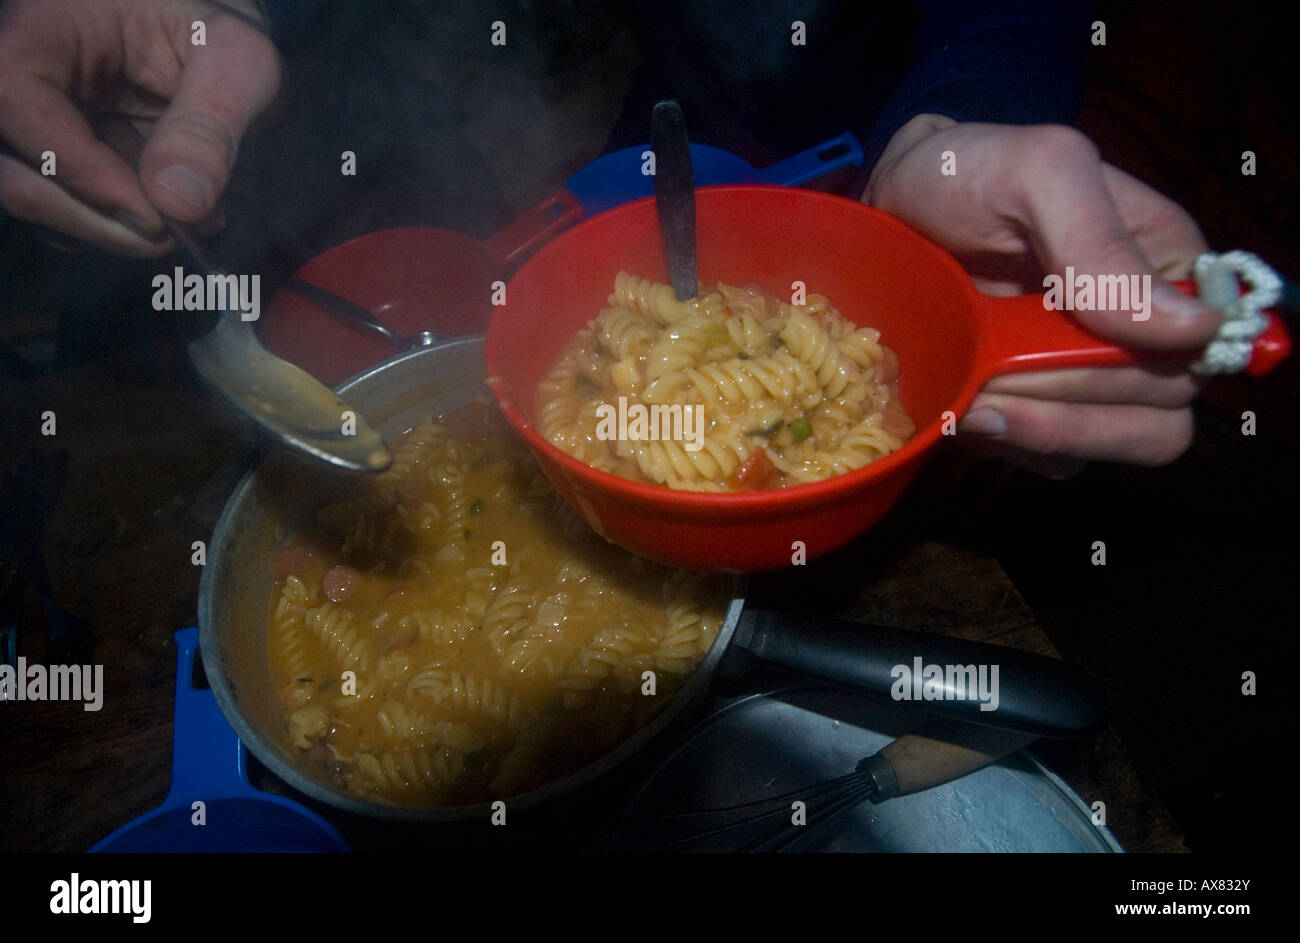 Mantener la comida caliente fotografías e imágenes de alta resolución -  Alamy